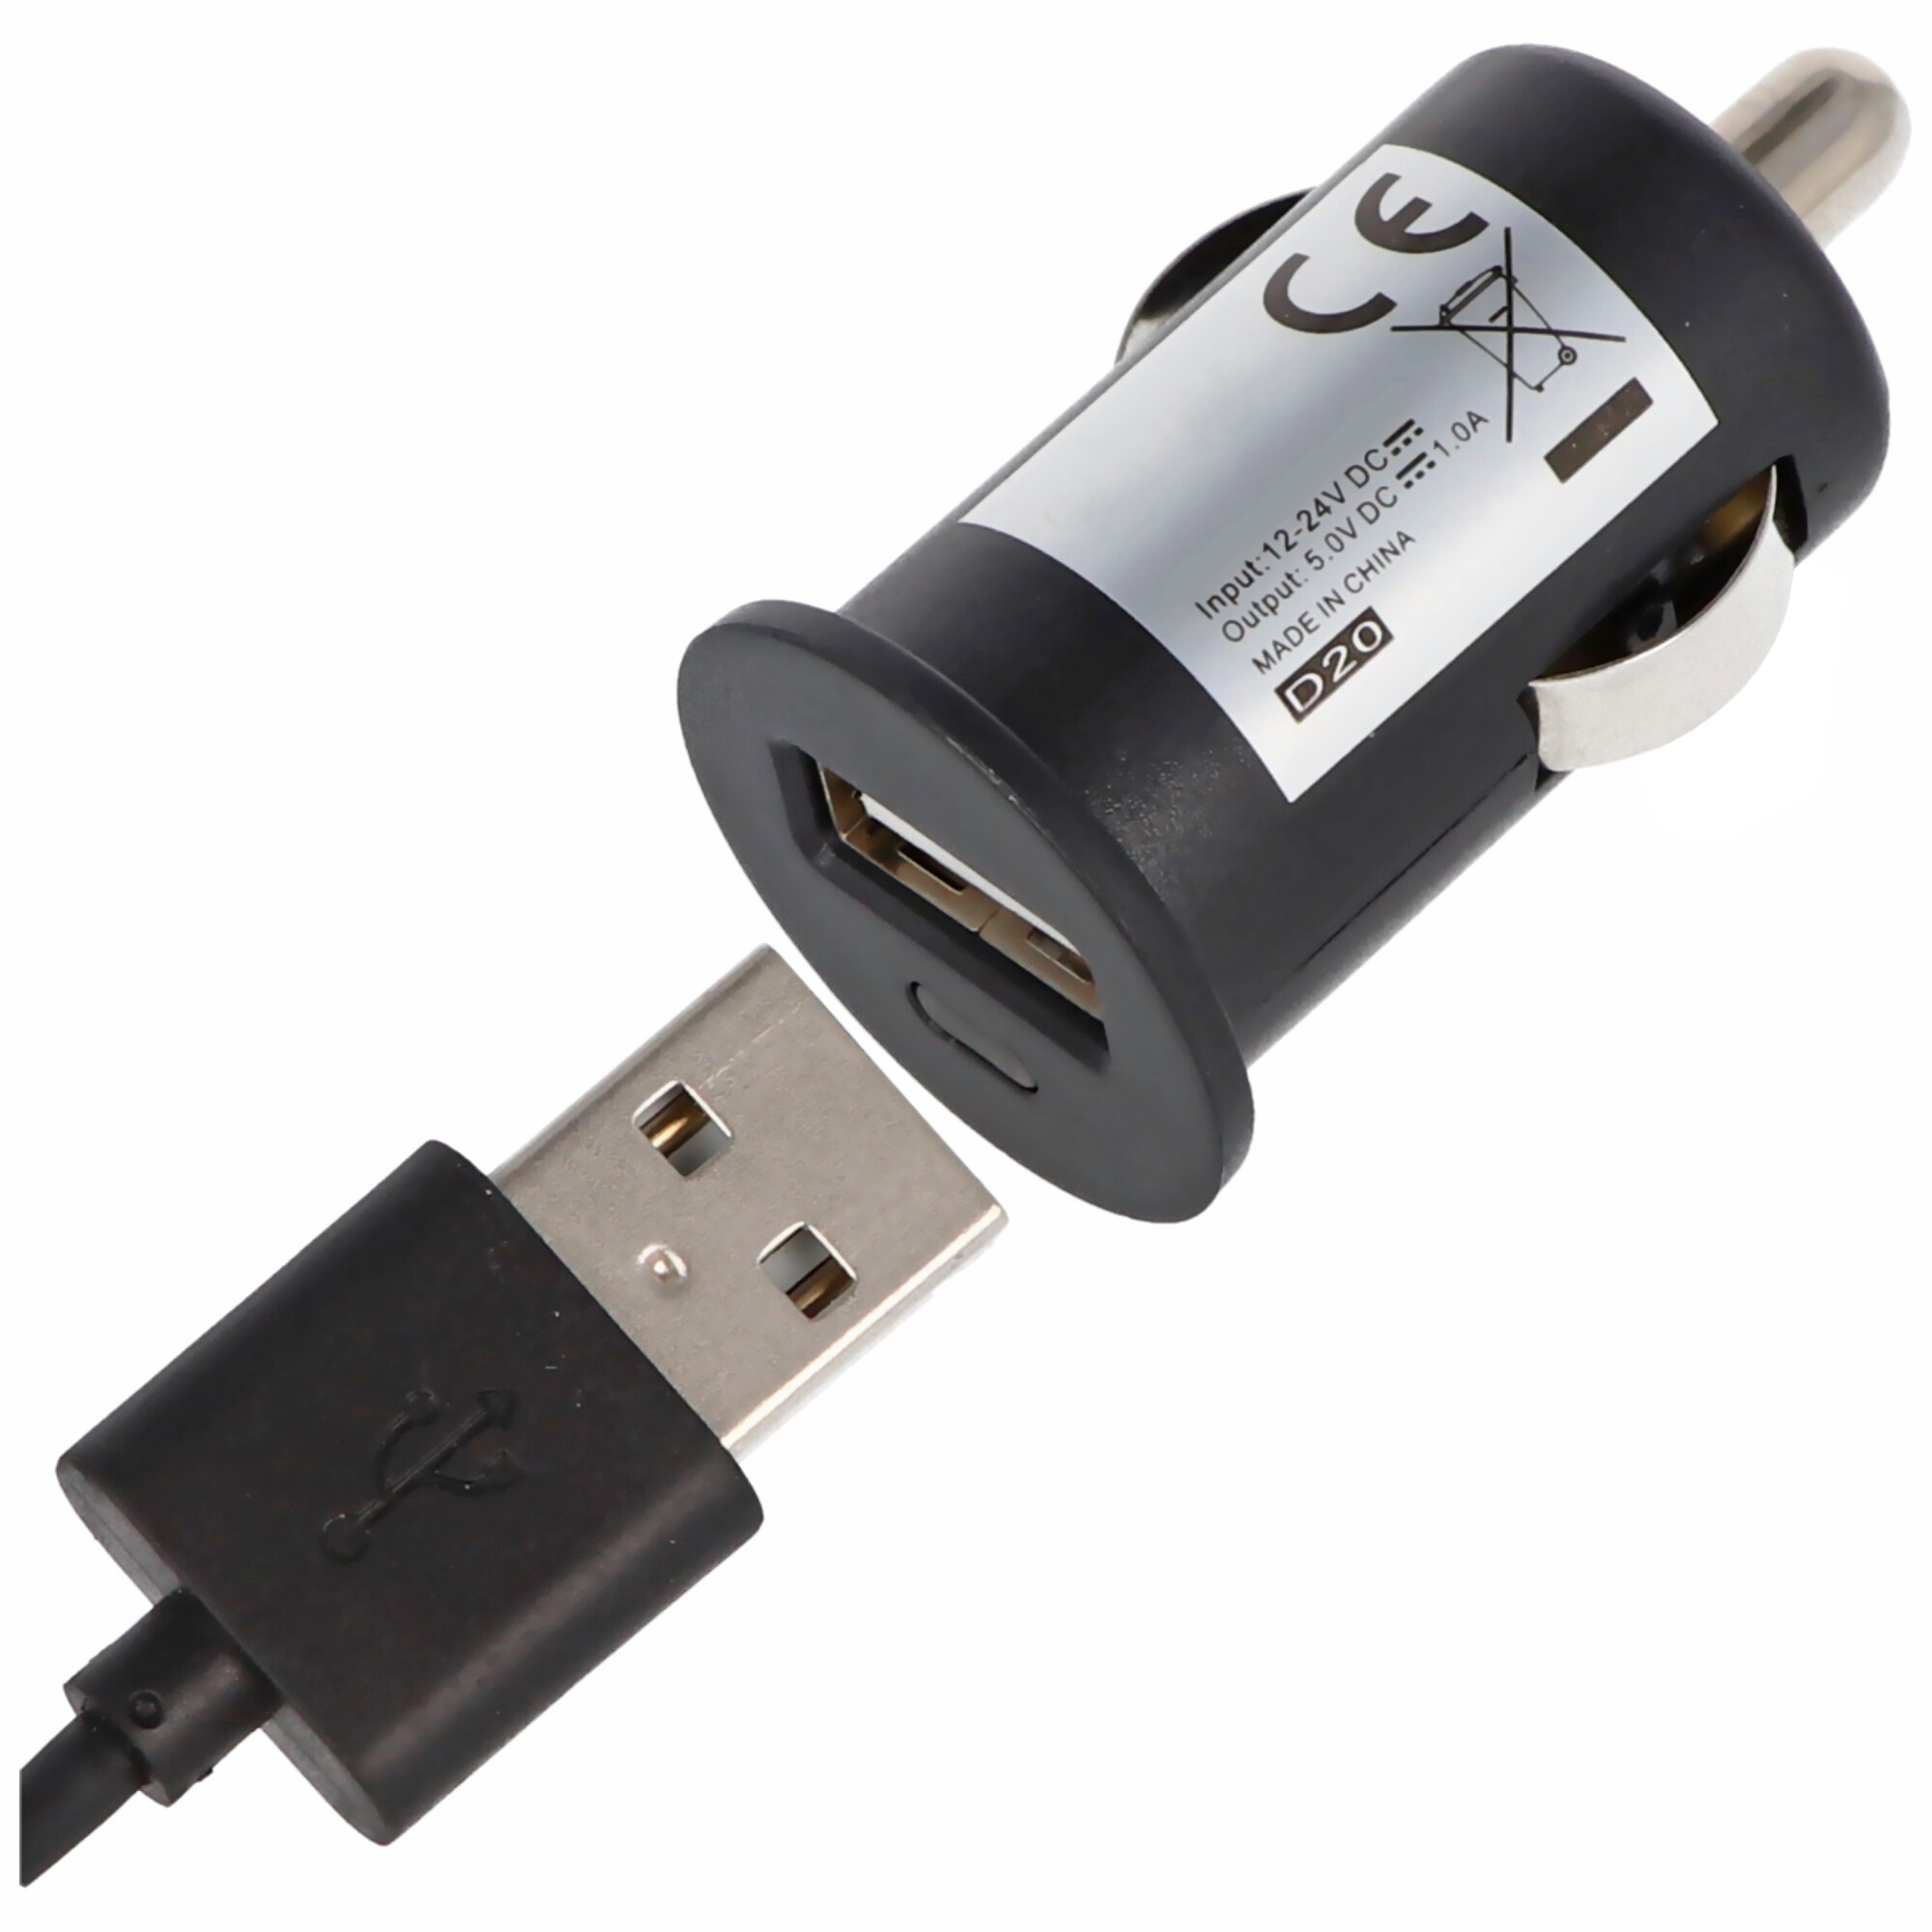 KFZ 019010: KFZ - USB-Ladebuchse, 12 - 24V, 2x 5V - 2,1A, Aufbau